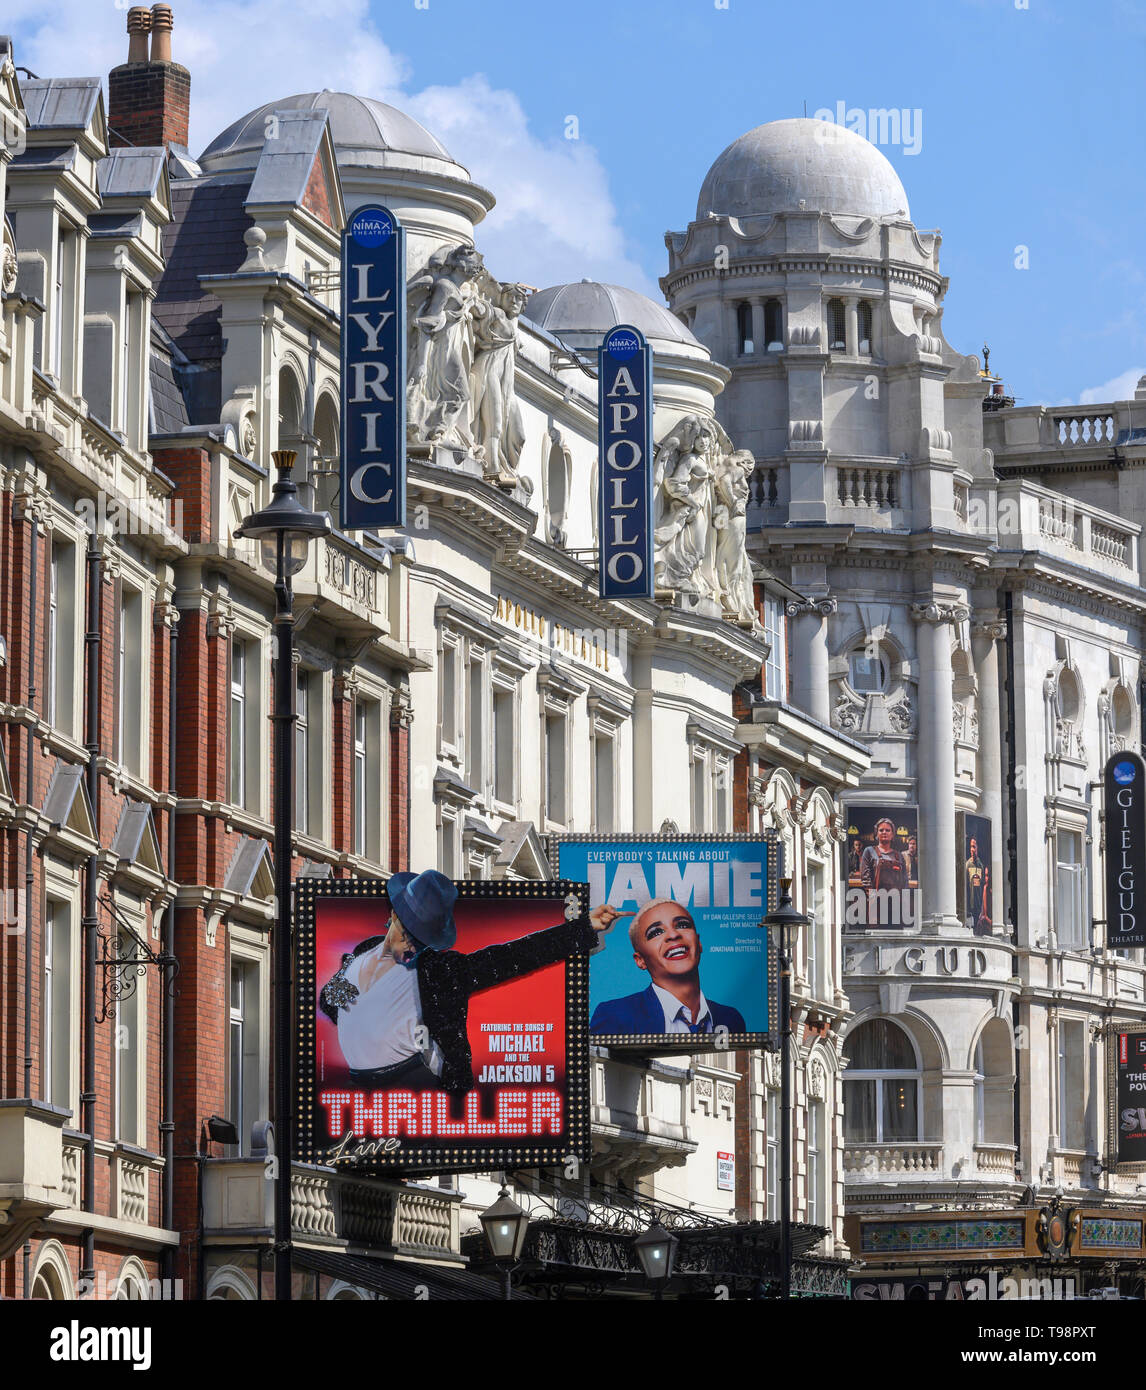 Vue vers l'Est le long de Shaftesbury Avenue, West End, Londres, Angleterre, Royaume-Uni - montrant les théâtres de West End classique y compris Lyric et Apollo. Banque D'Images